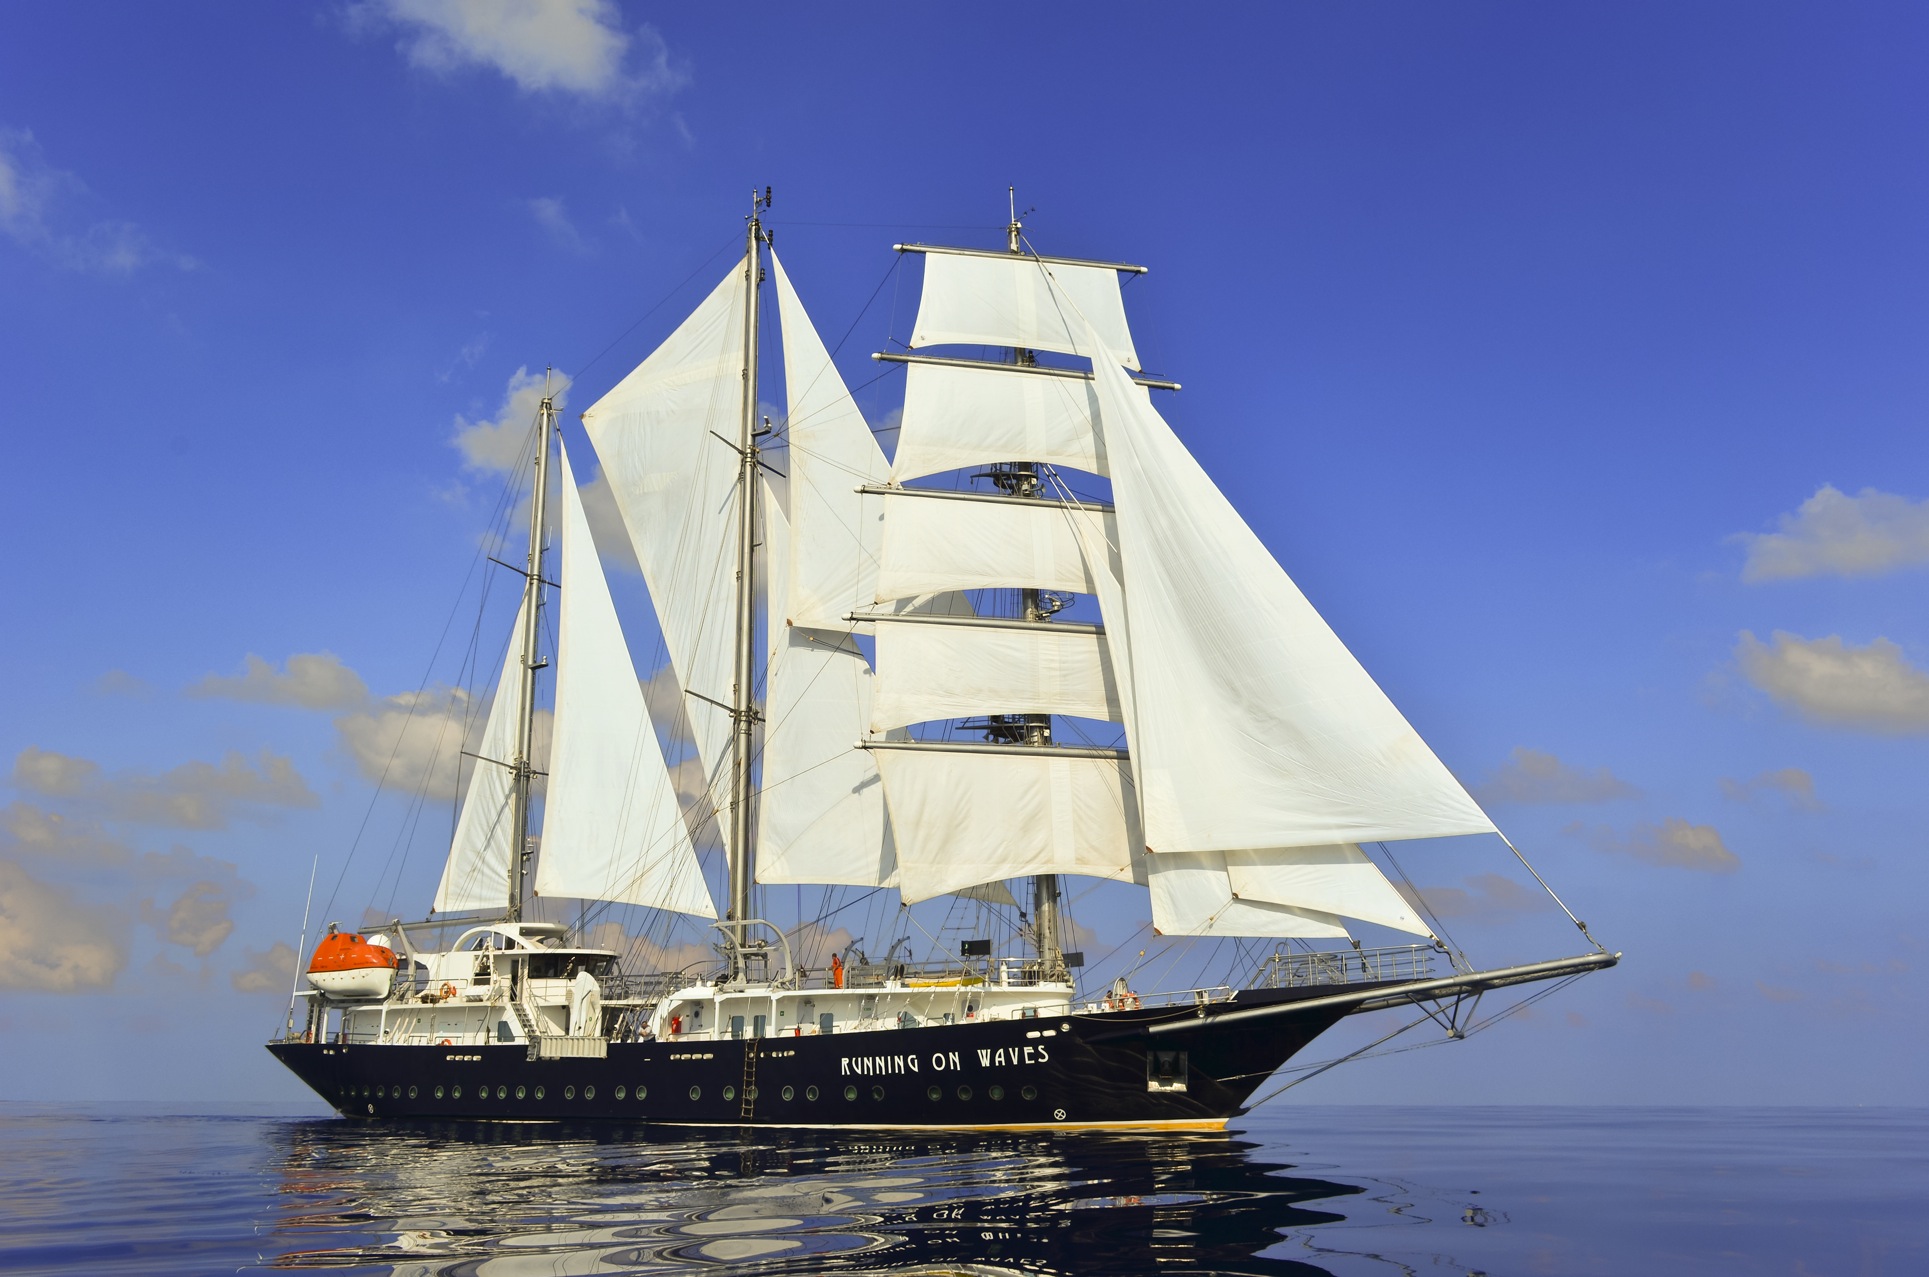 RUNNING ON WAVES Yacht Charter Details, Segel Masten Yachten ...